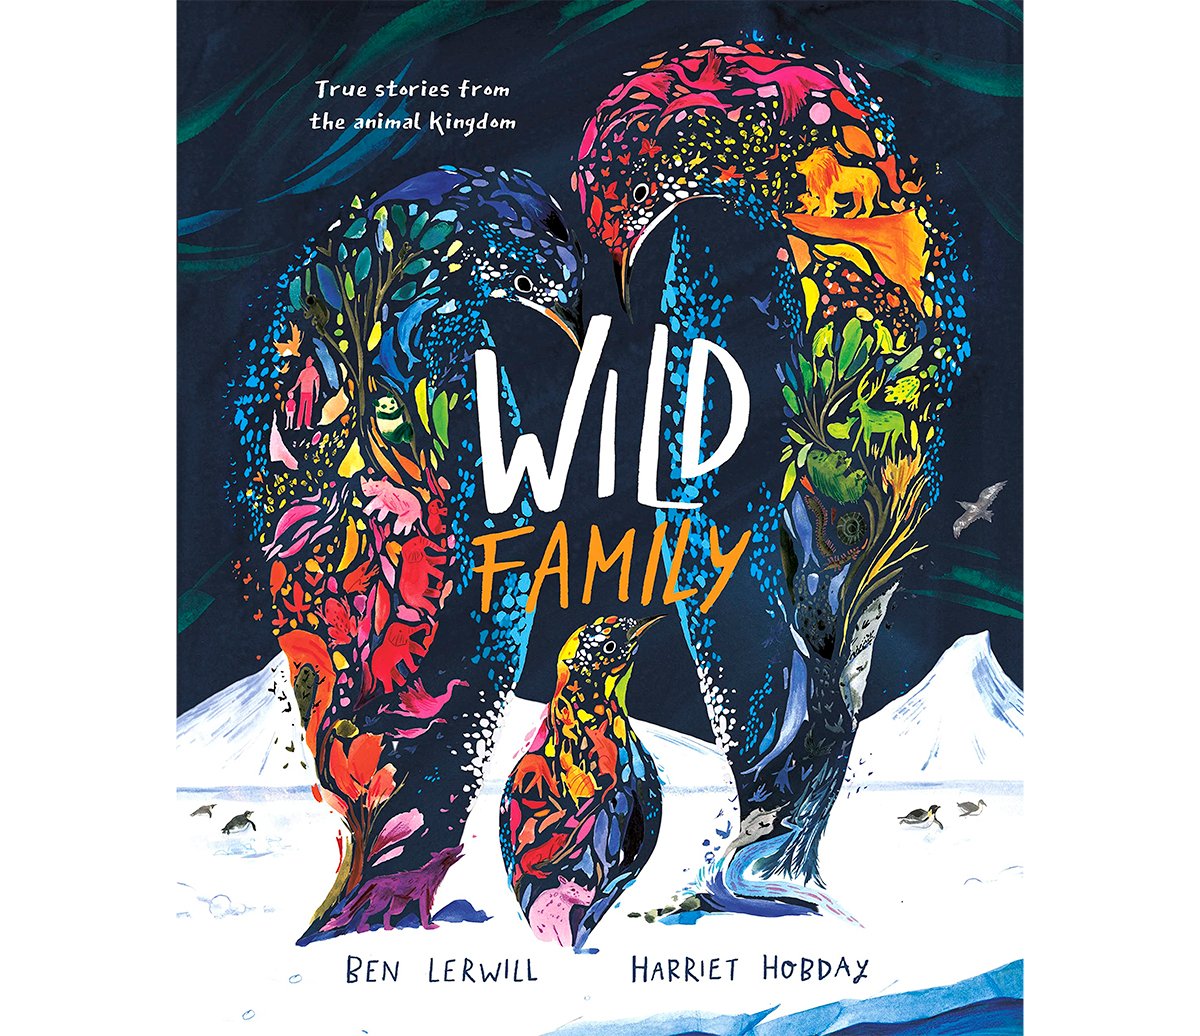 harriet-hobday-wild-family-cover.jpg